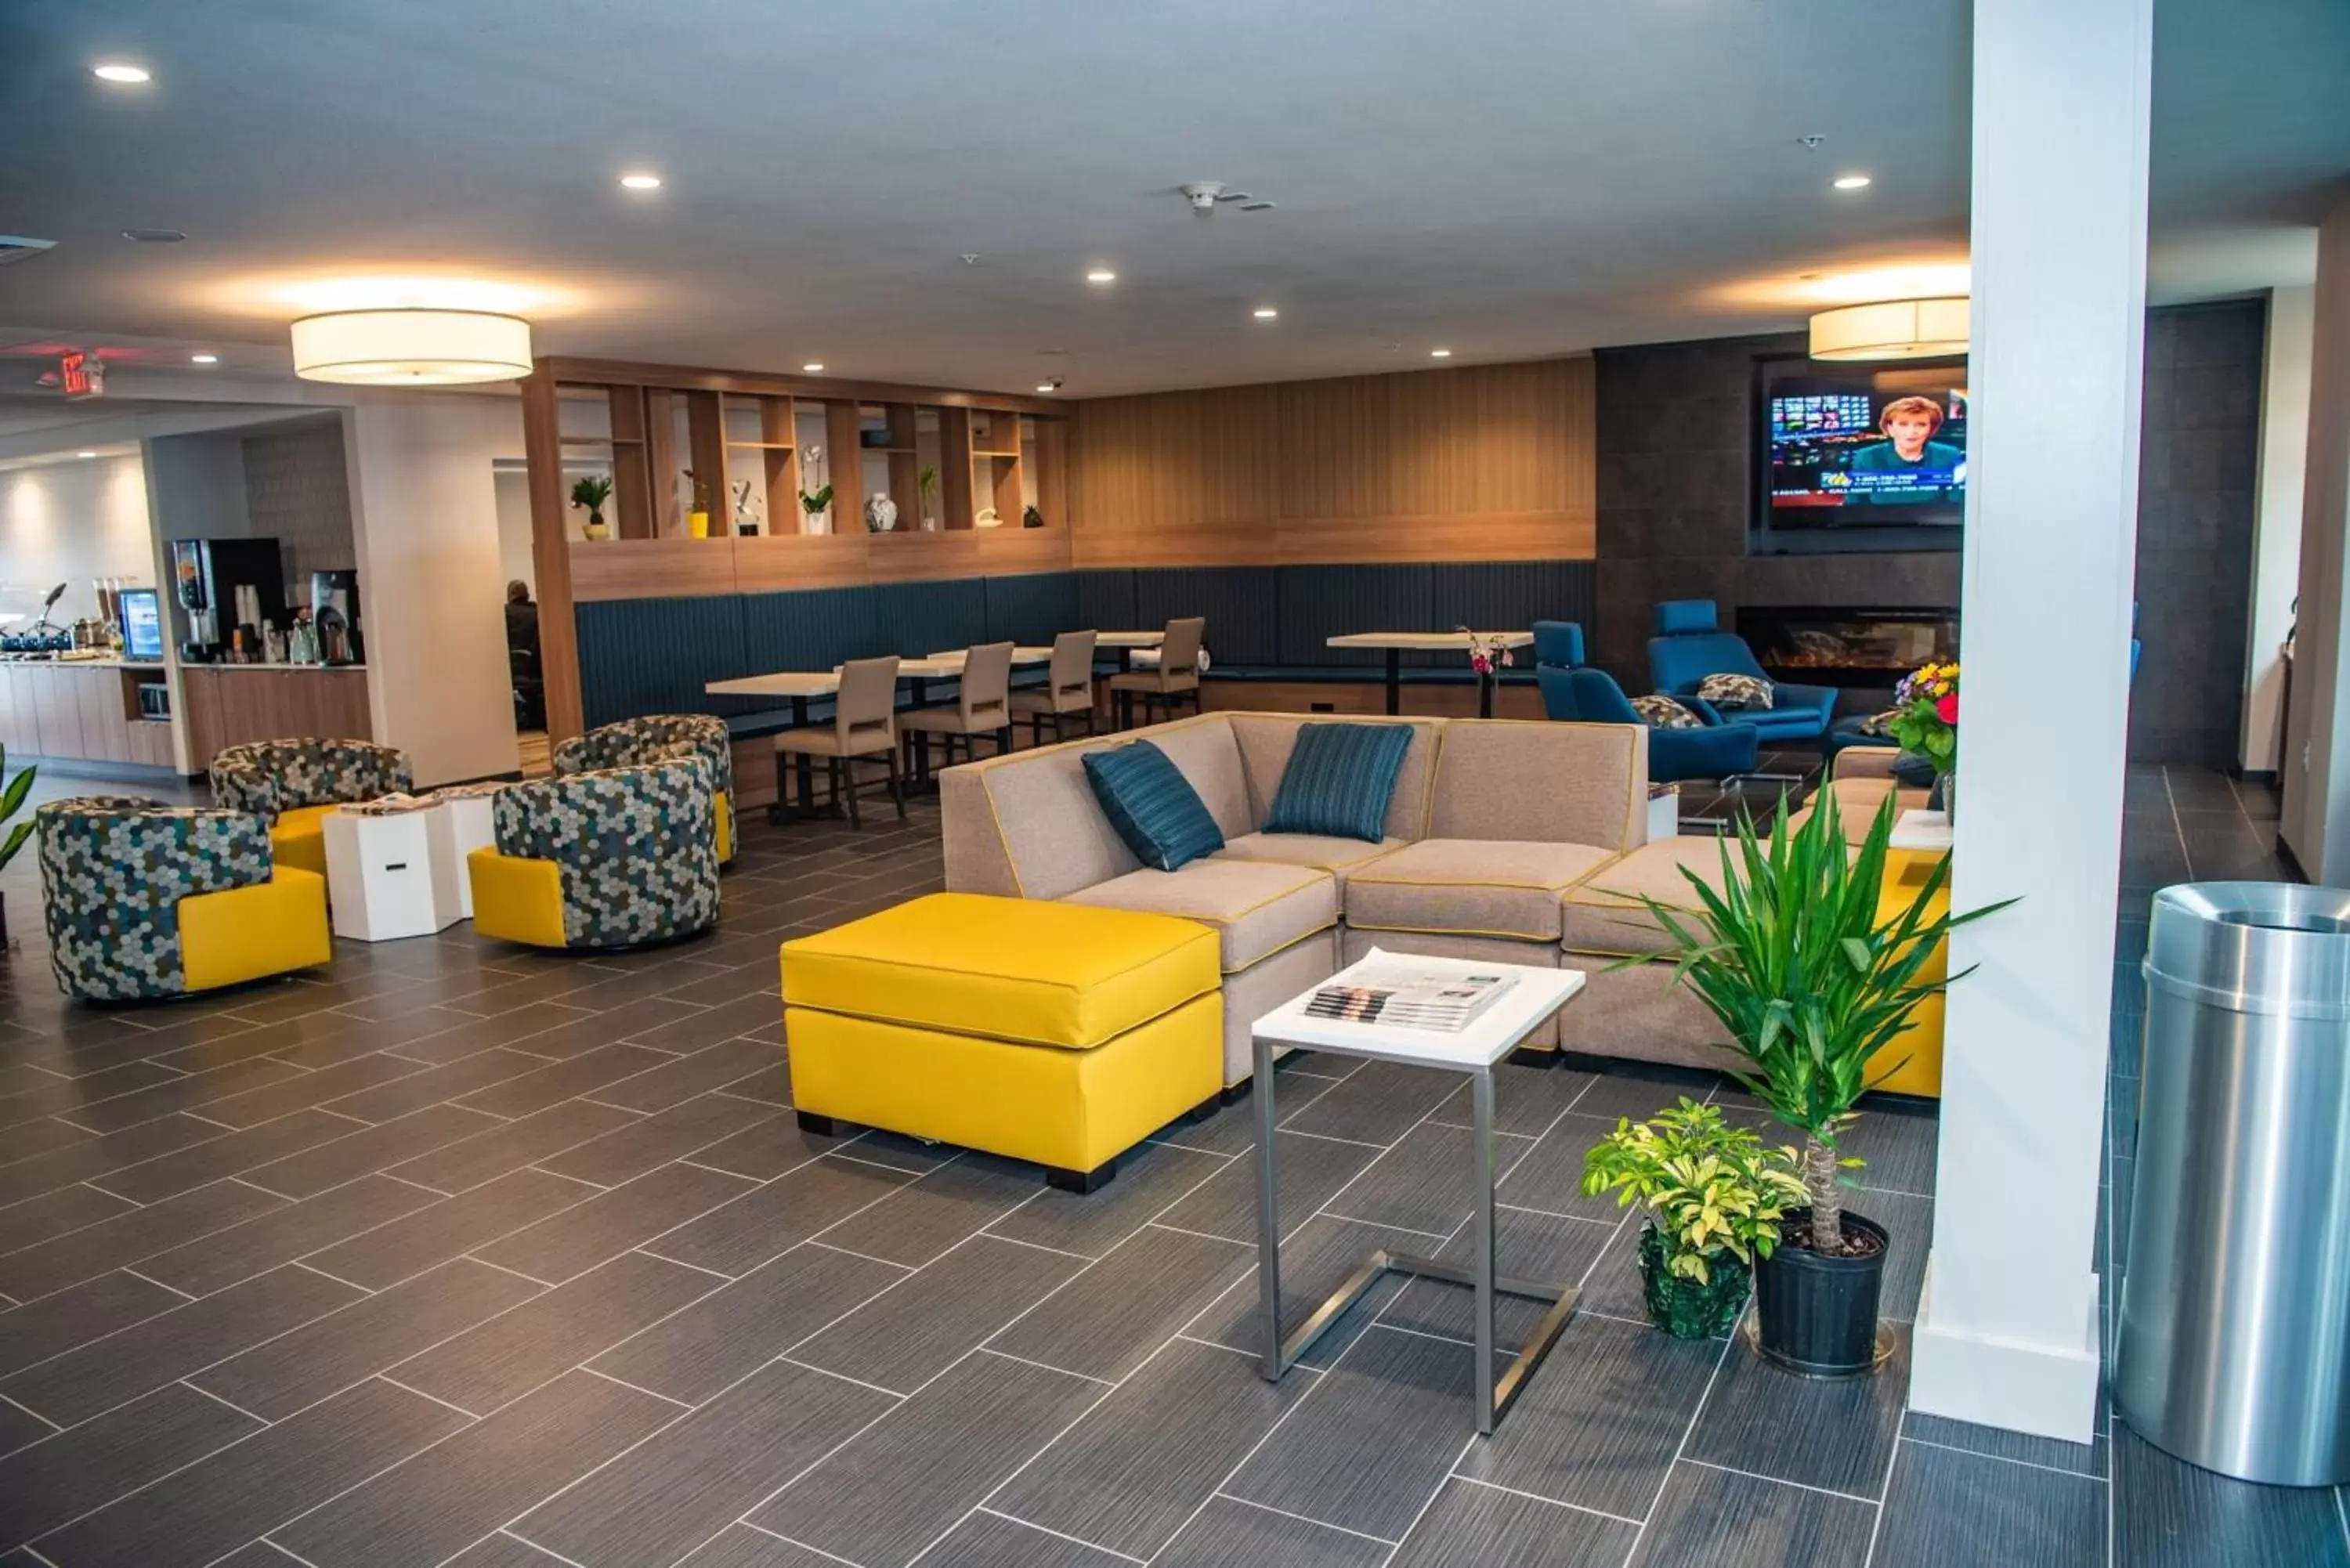 Lobby or reception, Lobby/Reception in Microtel Inn & Suites by Wyndham Carlisle